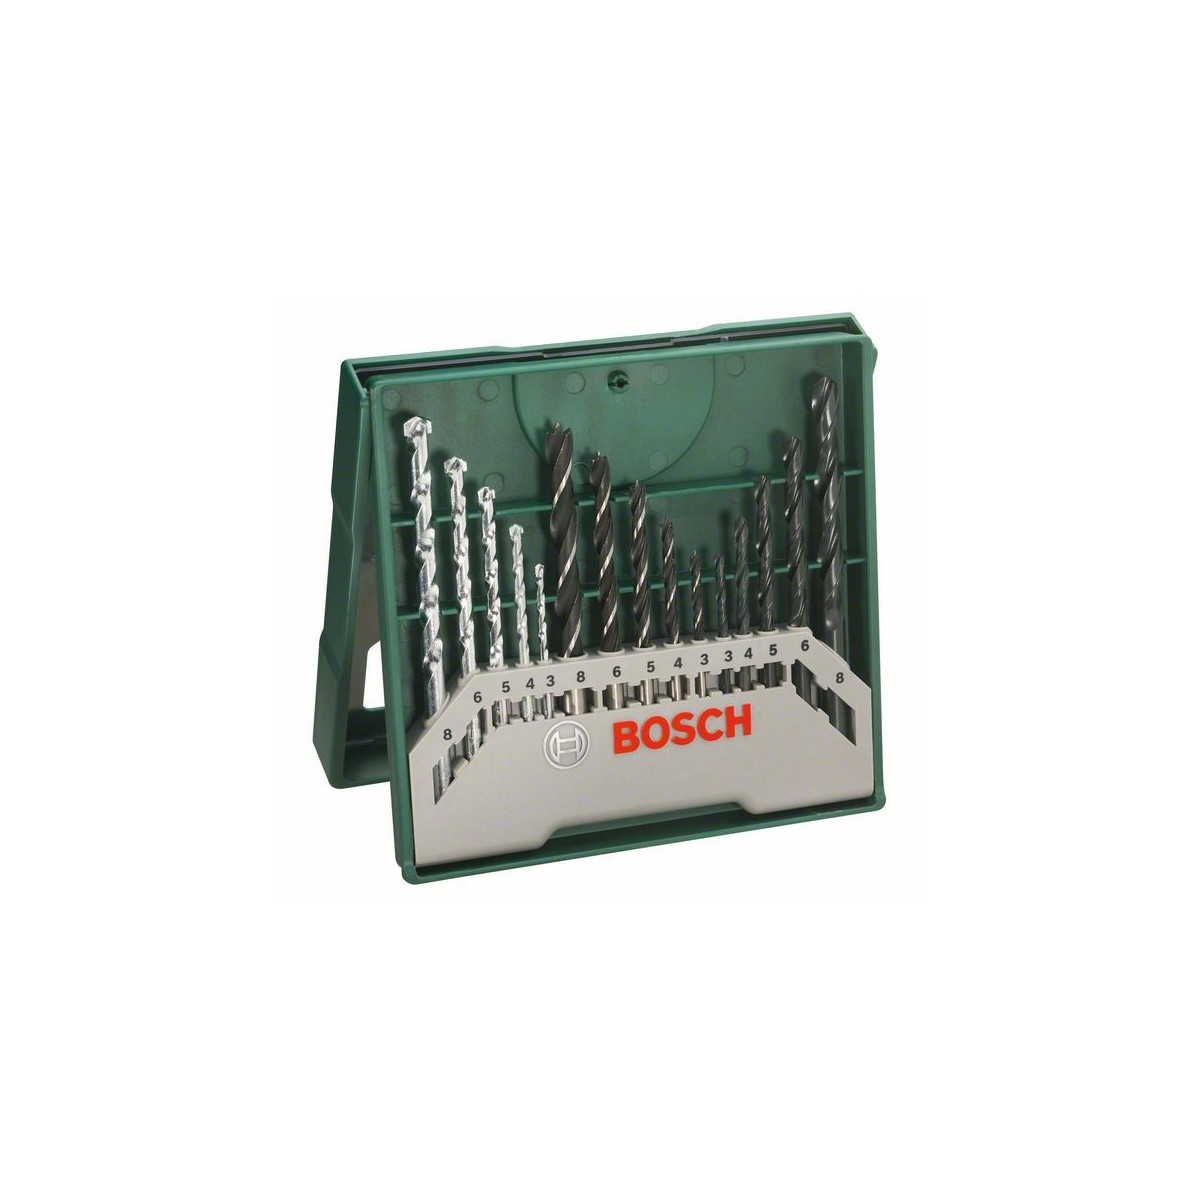 BOSCH Accessories X-Line 15-piece Universal drill bit set 2607019675